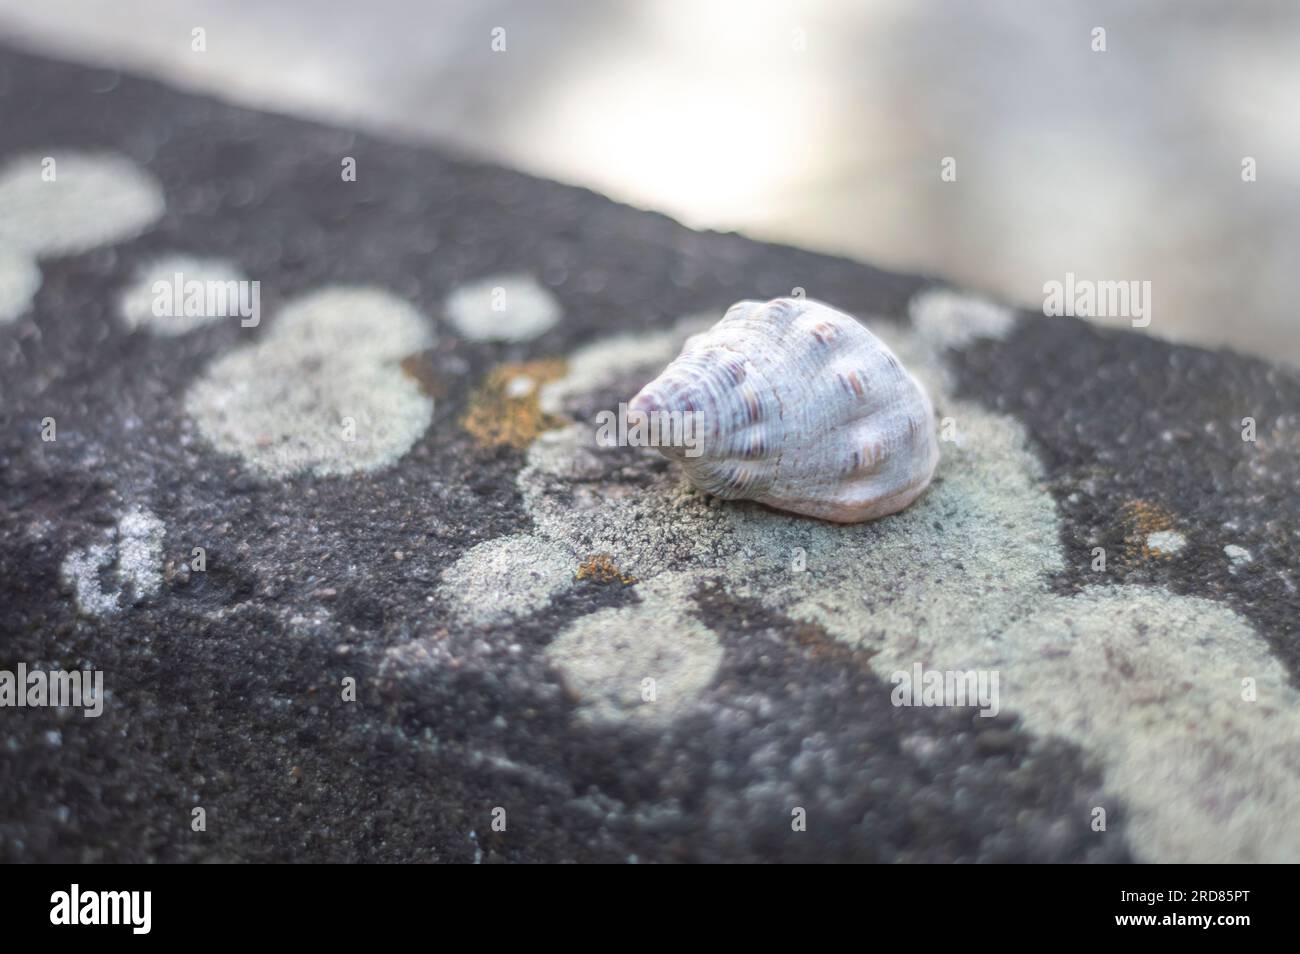 Coquillages de différents types sur le dessus d'une pierre avec des champignons, lumière naturelle. Banque D'Images